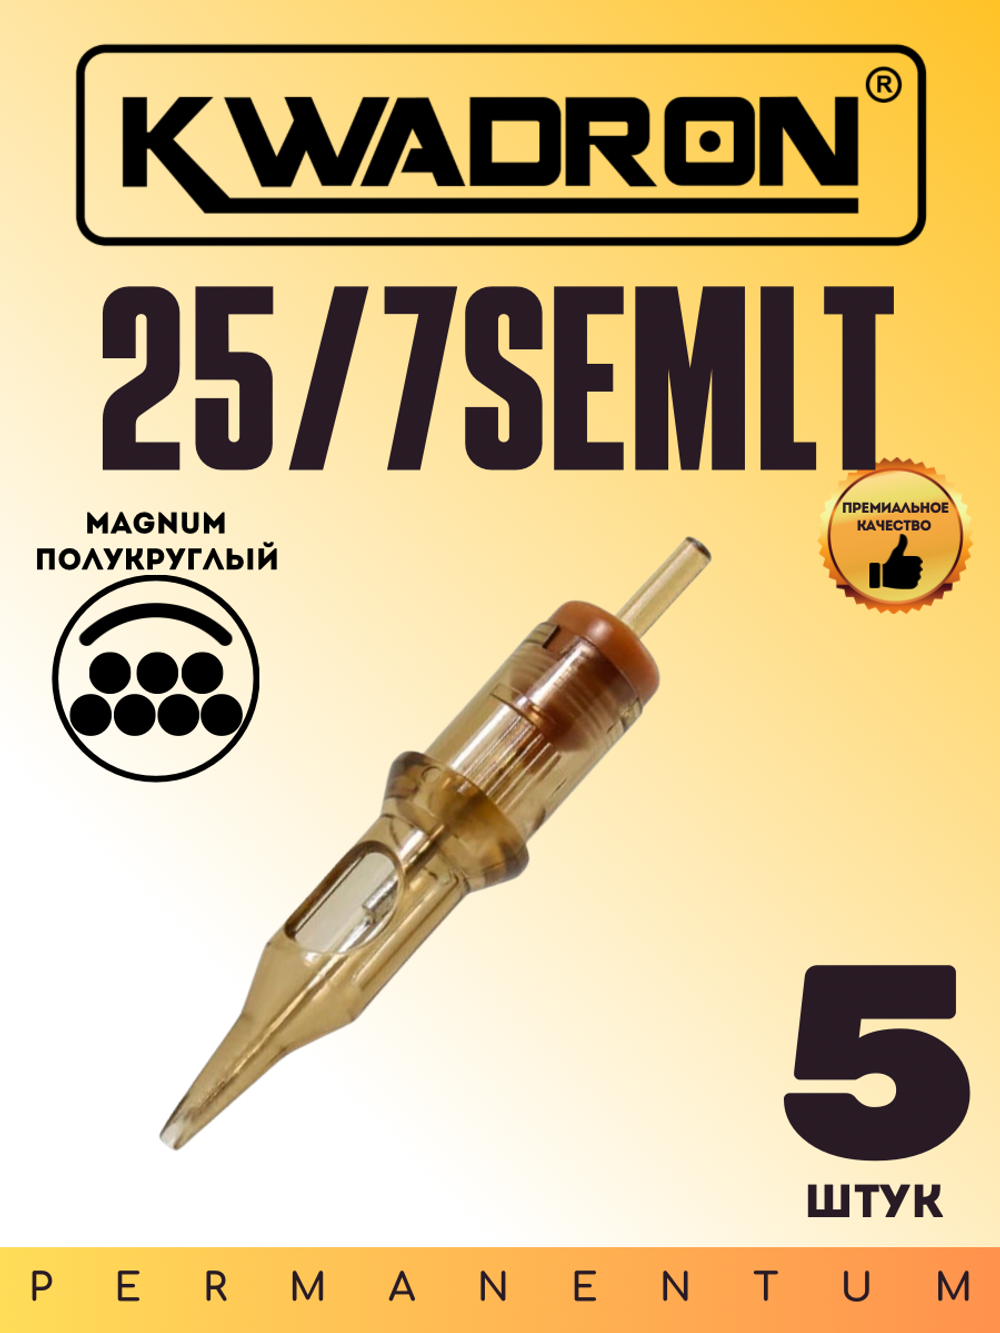 Картридж для татуажа "KWADRON Soft Edge Magnum 25/7SEMLT" блистер 5 шт.